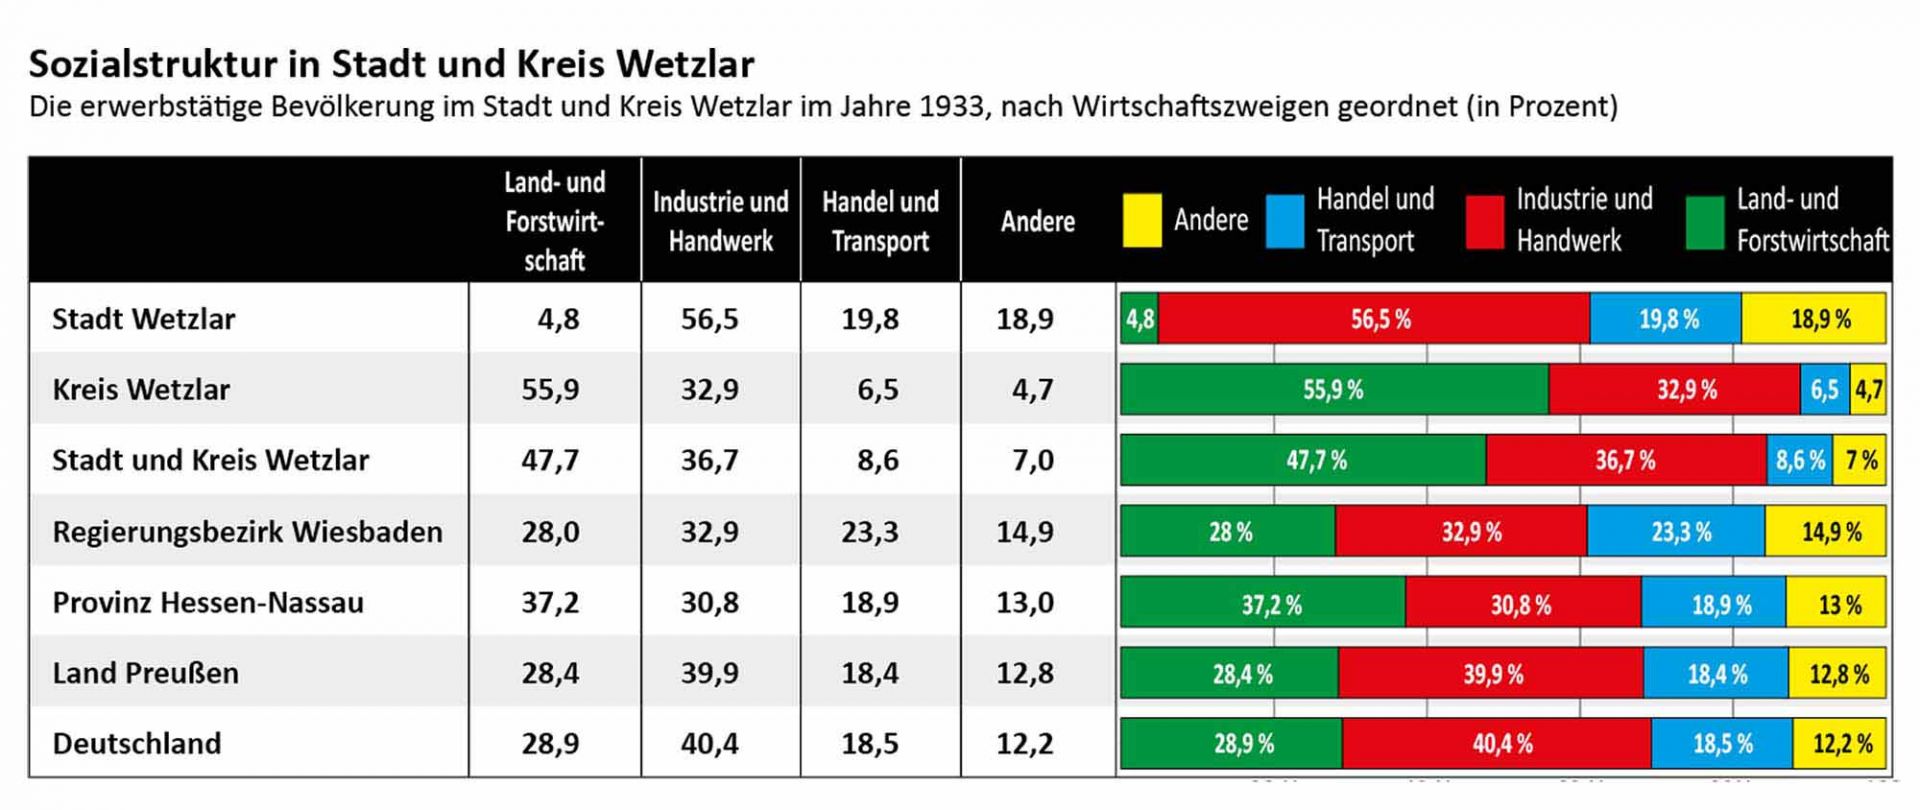 Vergleiche der Sozialstruktur in der Stadt Wetzlar, dem Landkreis, der Region, Preußen und dem Deutschen Reich